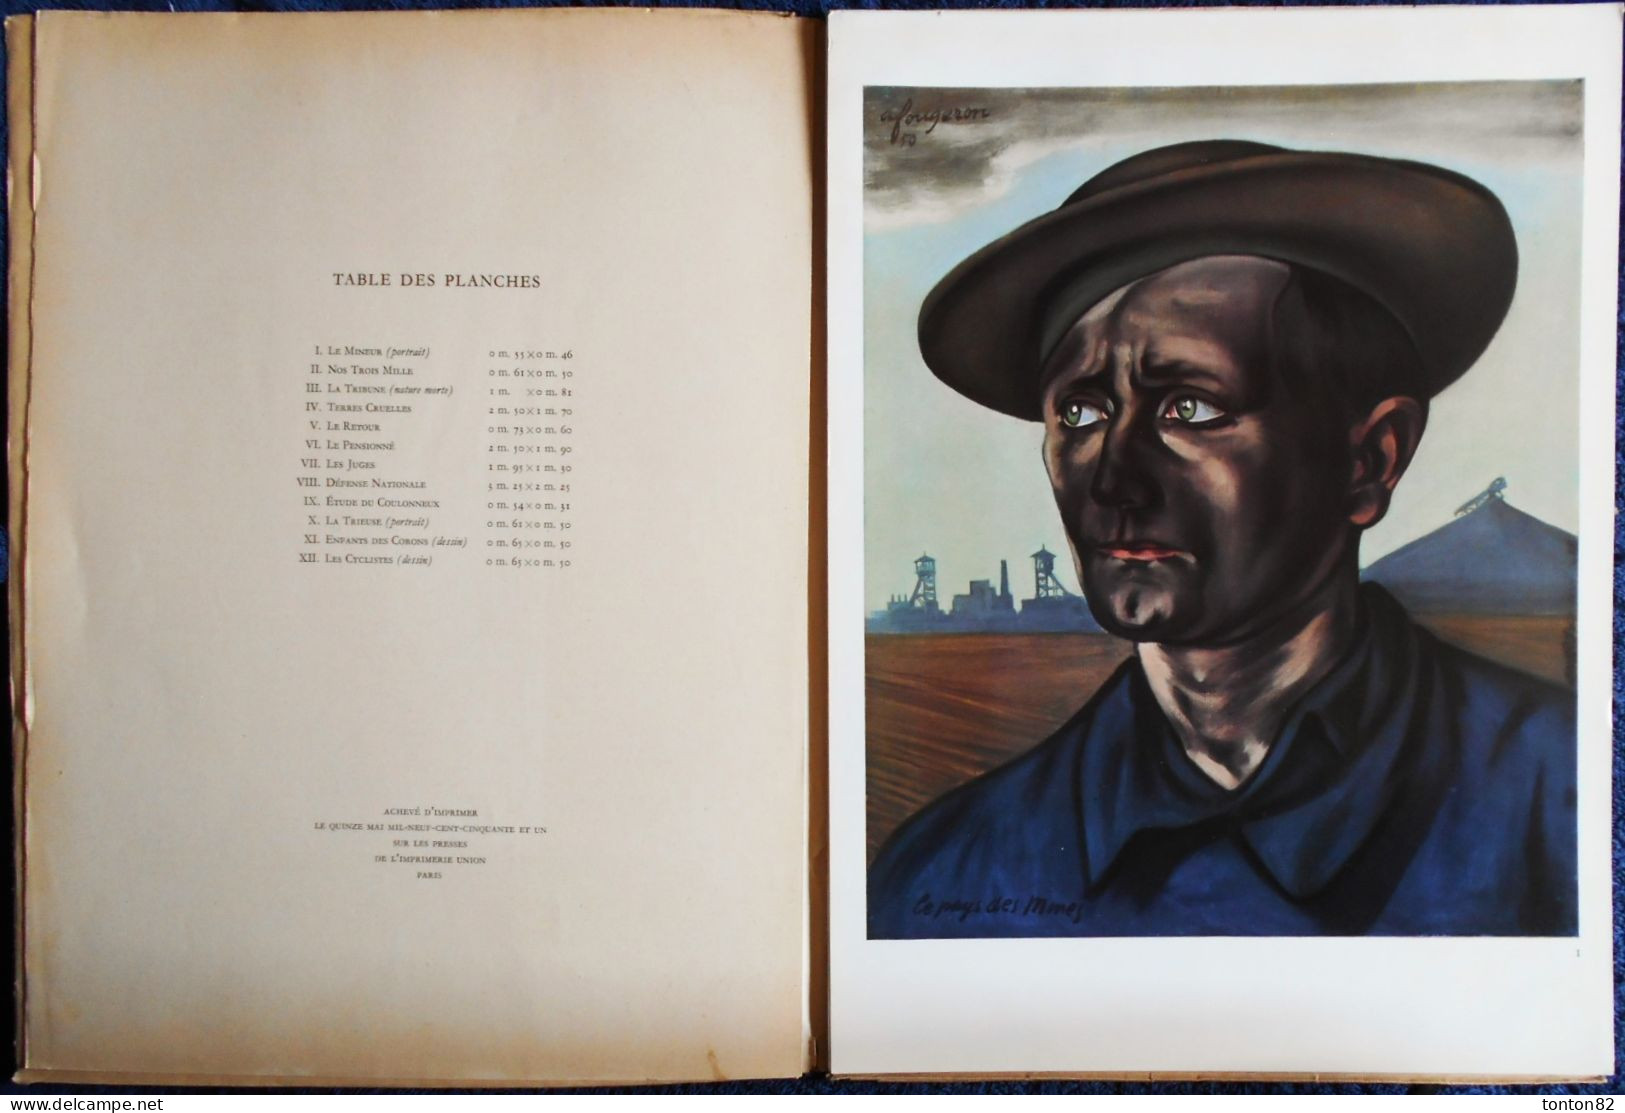 André Fougeron - ( Le Peintre Des Ouvriers ) - LE PAYS DES MINES - Les Éditions Cercle D'Art, Paris - ( 1951 ) . - Arte